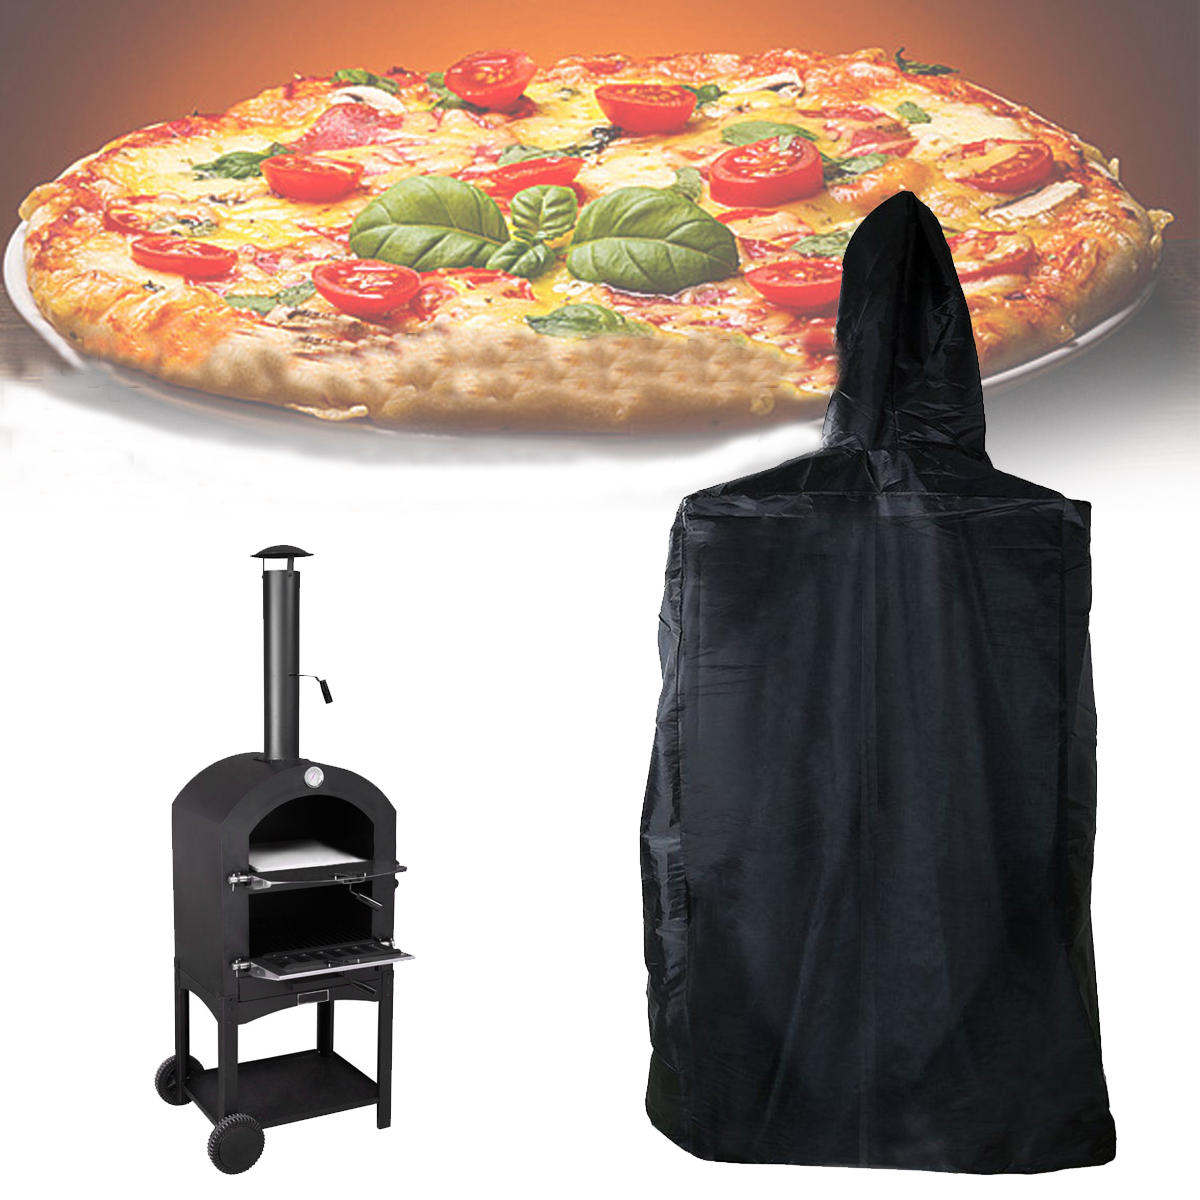 Kültéri pizza sütő fedő méretei 160x37x50cm, vízálló, por és UV álló.